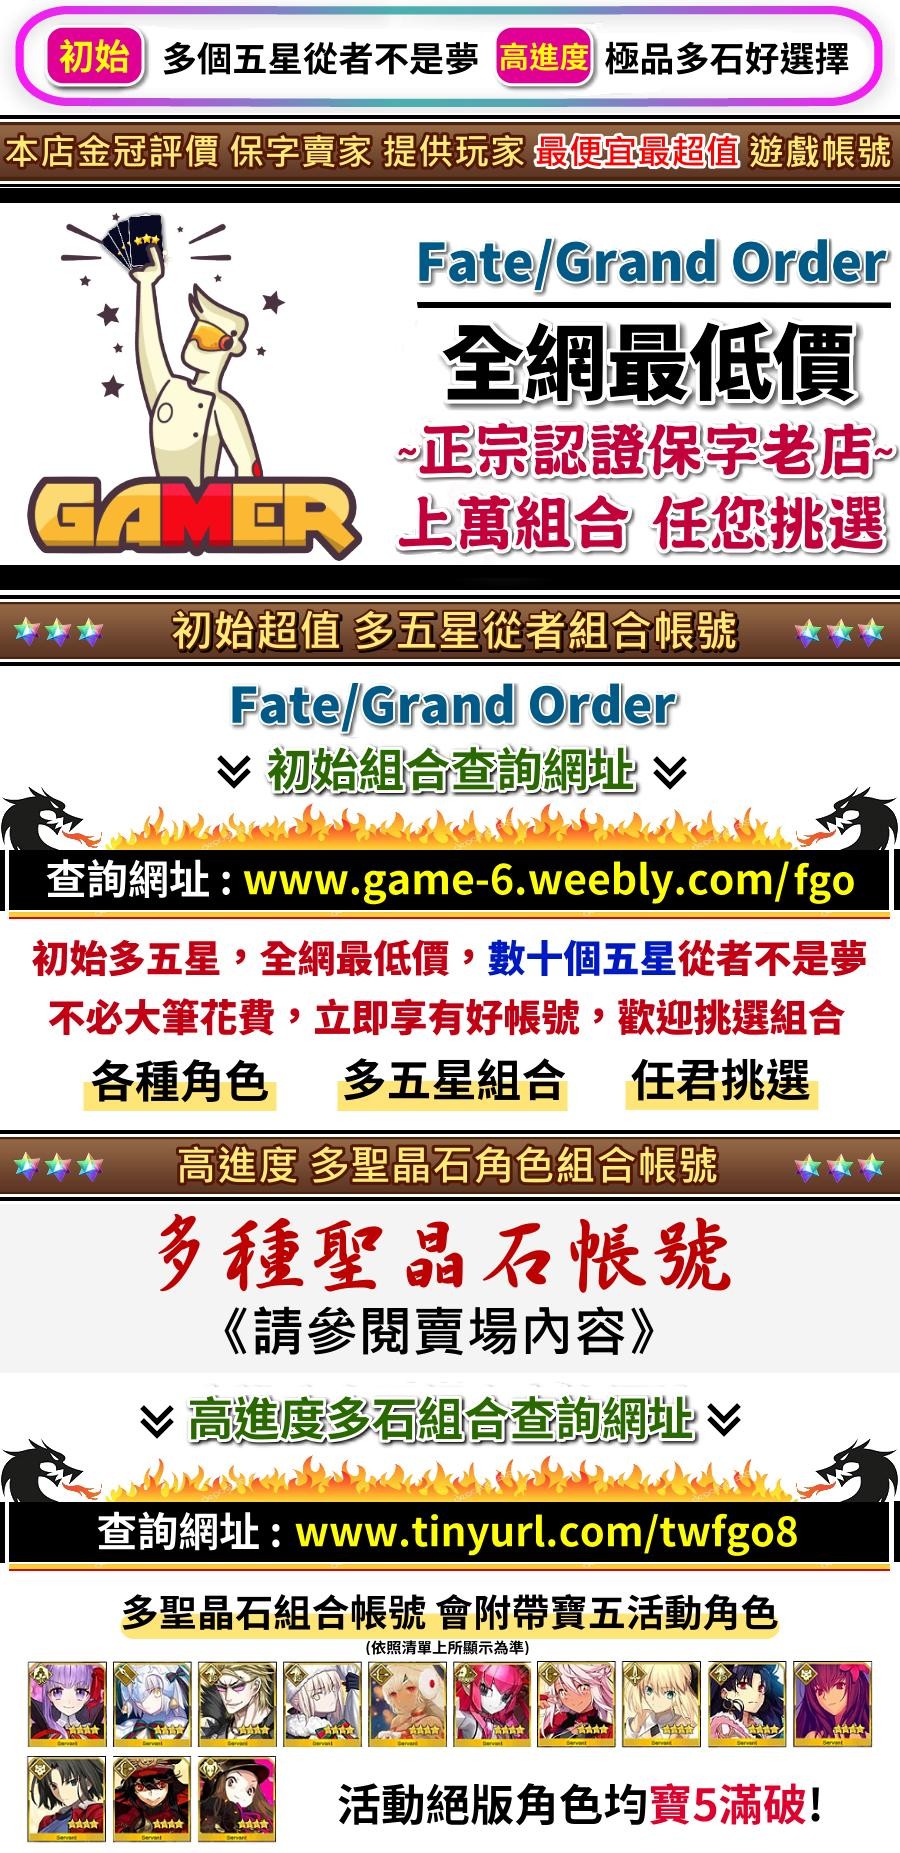 金冠評價 Fate Grand Order 全網最低價 正宗老店 初始 高進度多石 降價促銷 清單任選